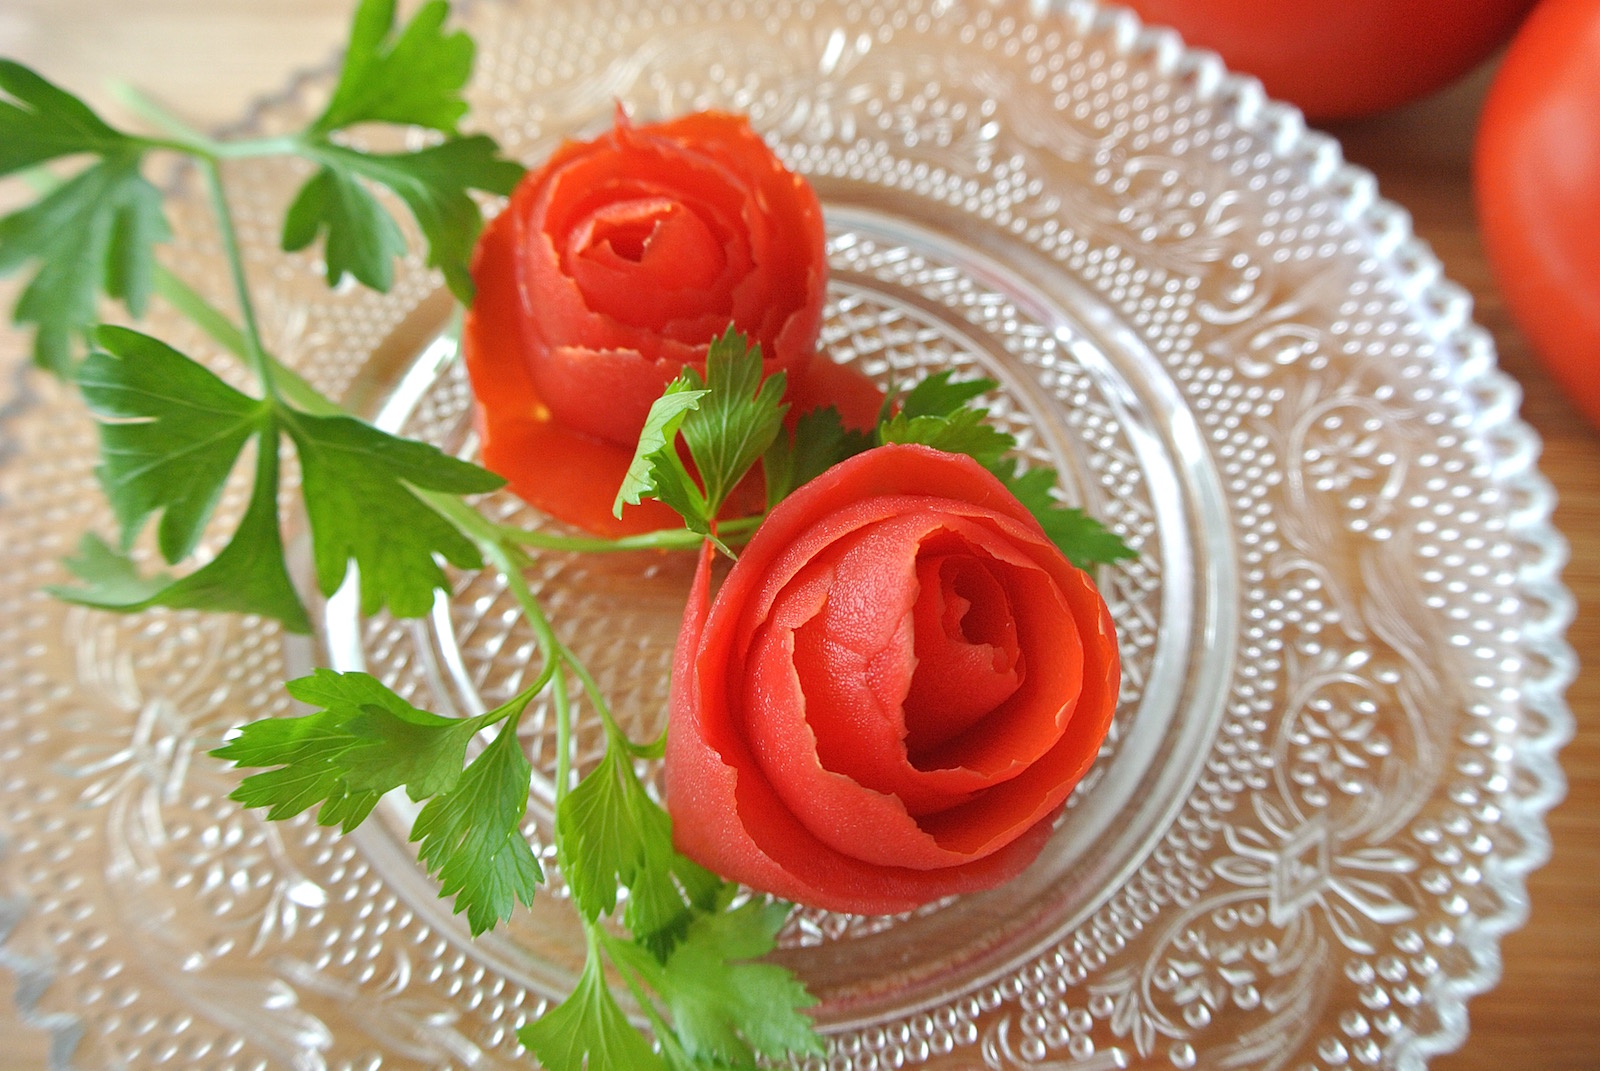 トマトで作るオトメ華麗なバラ ロマンチックなトマトの飾り切りができるワザはこれだよー 17年8月11日 エキサイトニュース